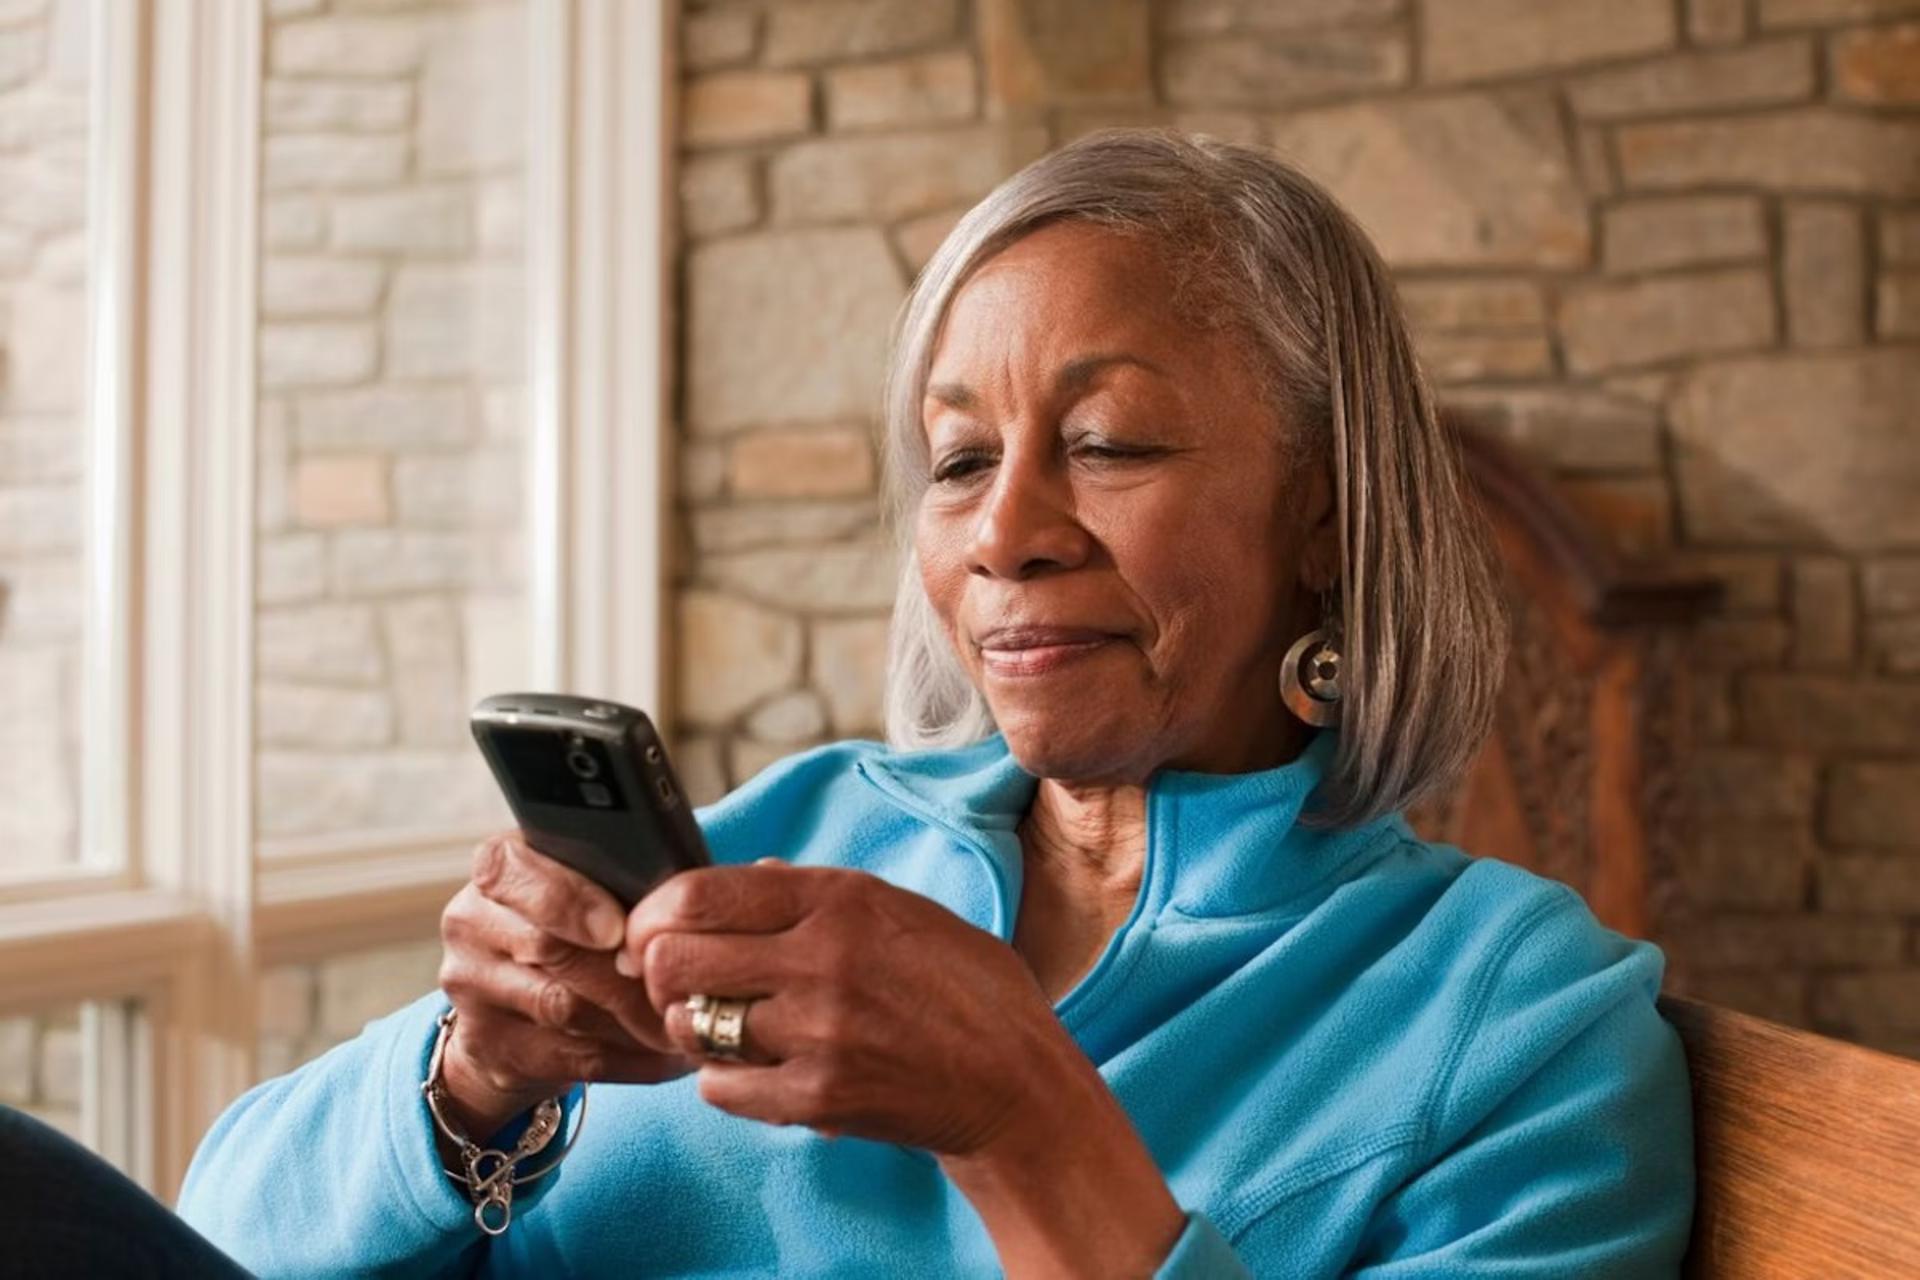 زن سالمند درحال کارکردن با گوشی هوشمند است